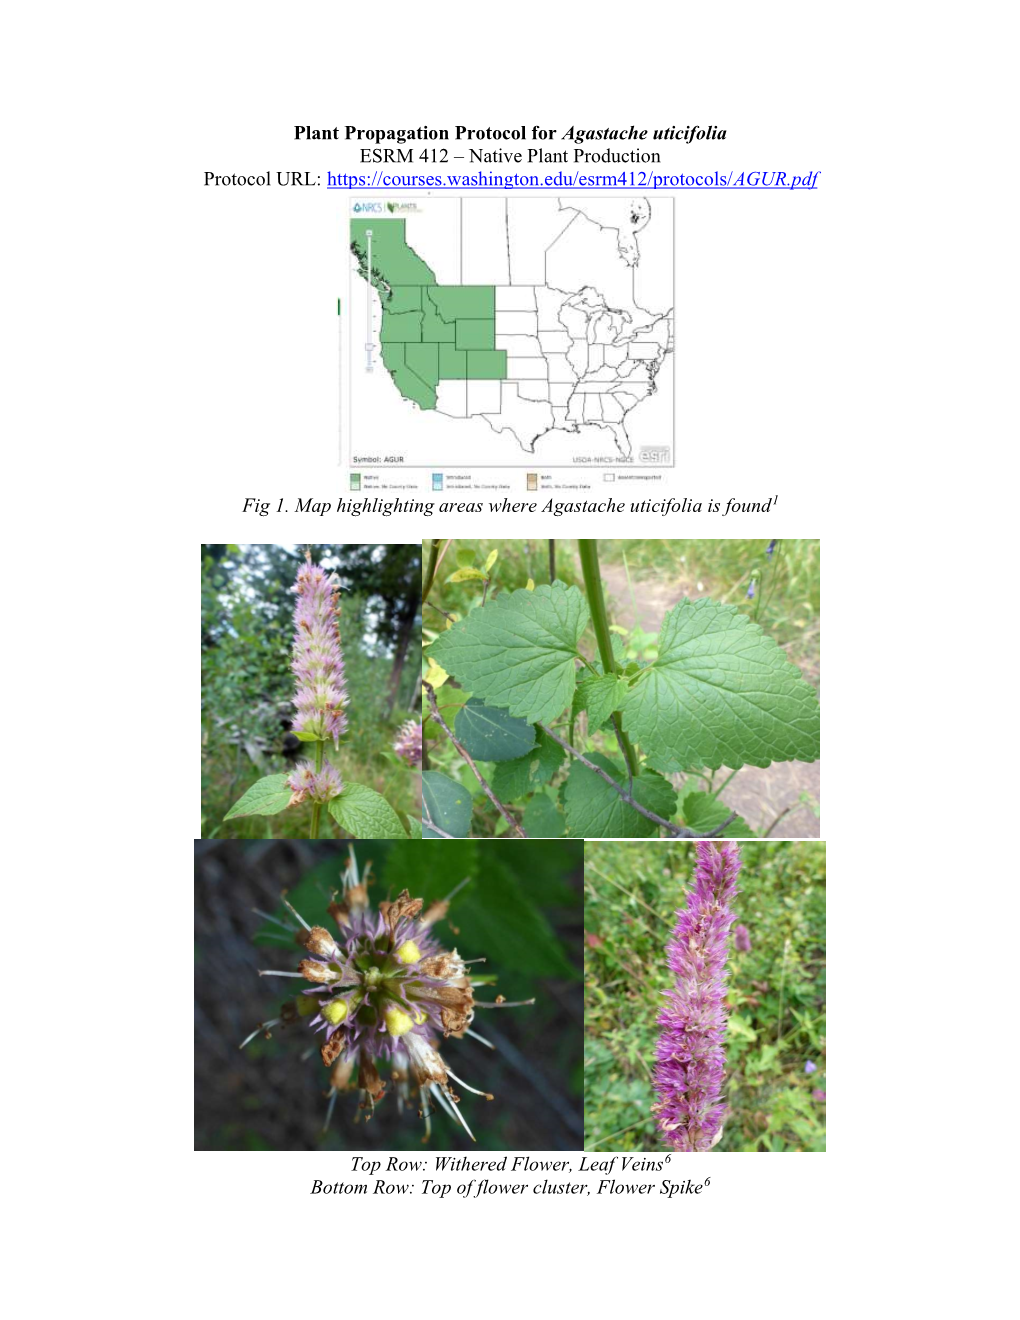 Plant Propagation Protocol for Agastache Uticifolia ESRM 412 – Native Plant Production Protocol URL